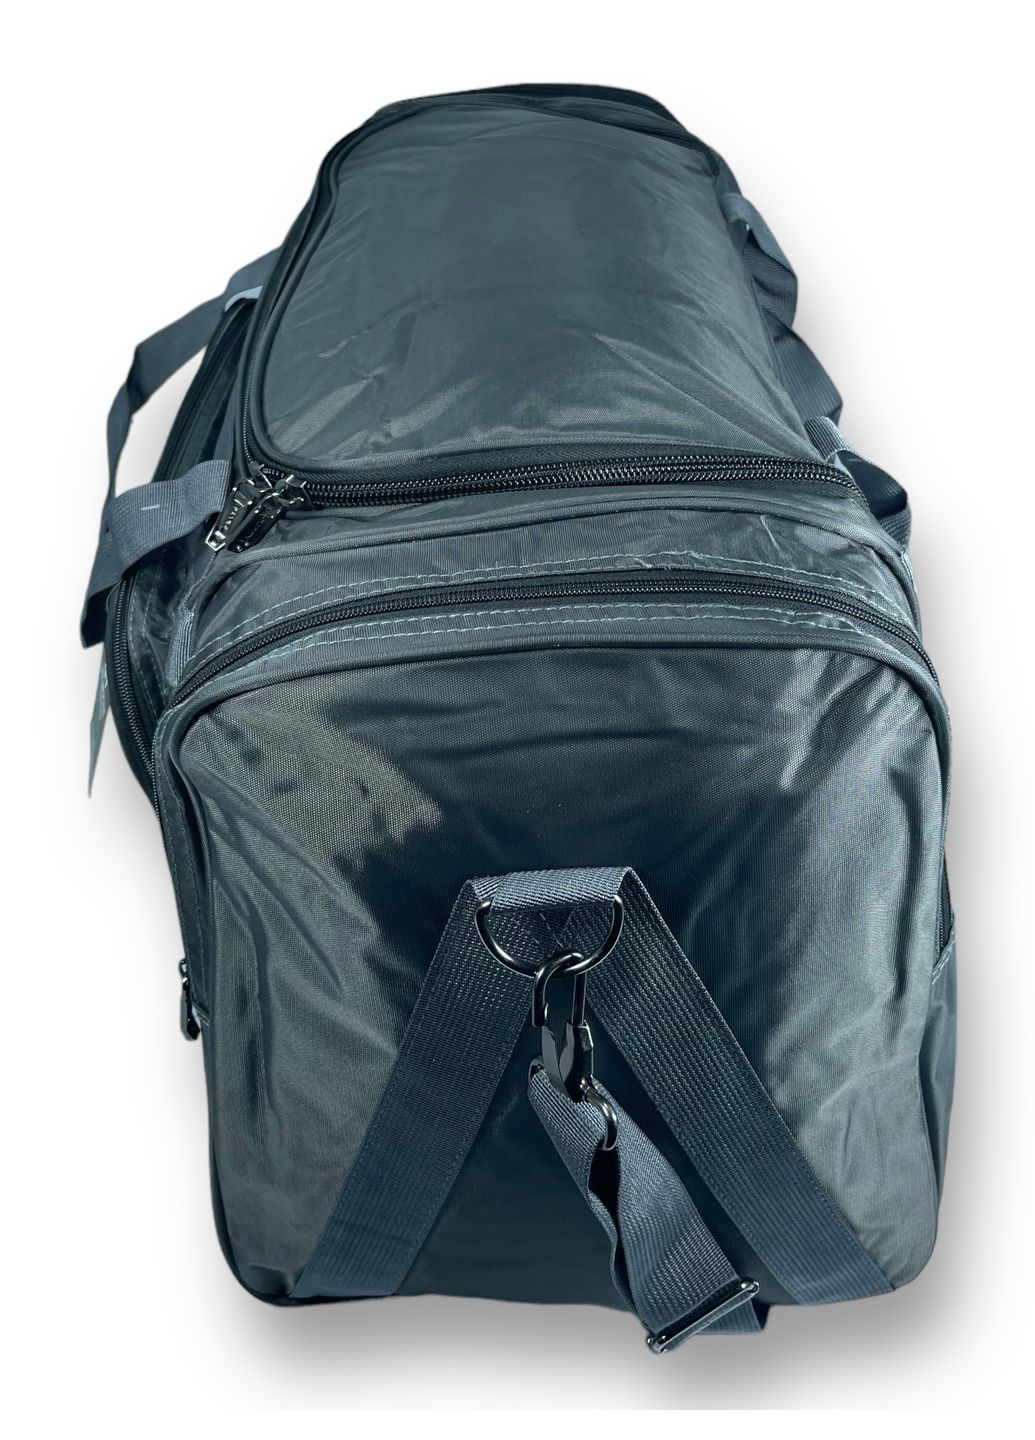 Дорожная сумка, 70 л, 1 отделение, 4 дополнительных кармана, размер: 65*35*30 см, серая Filippini (285814831)